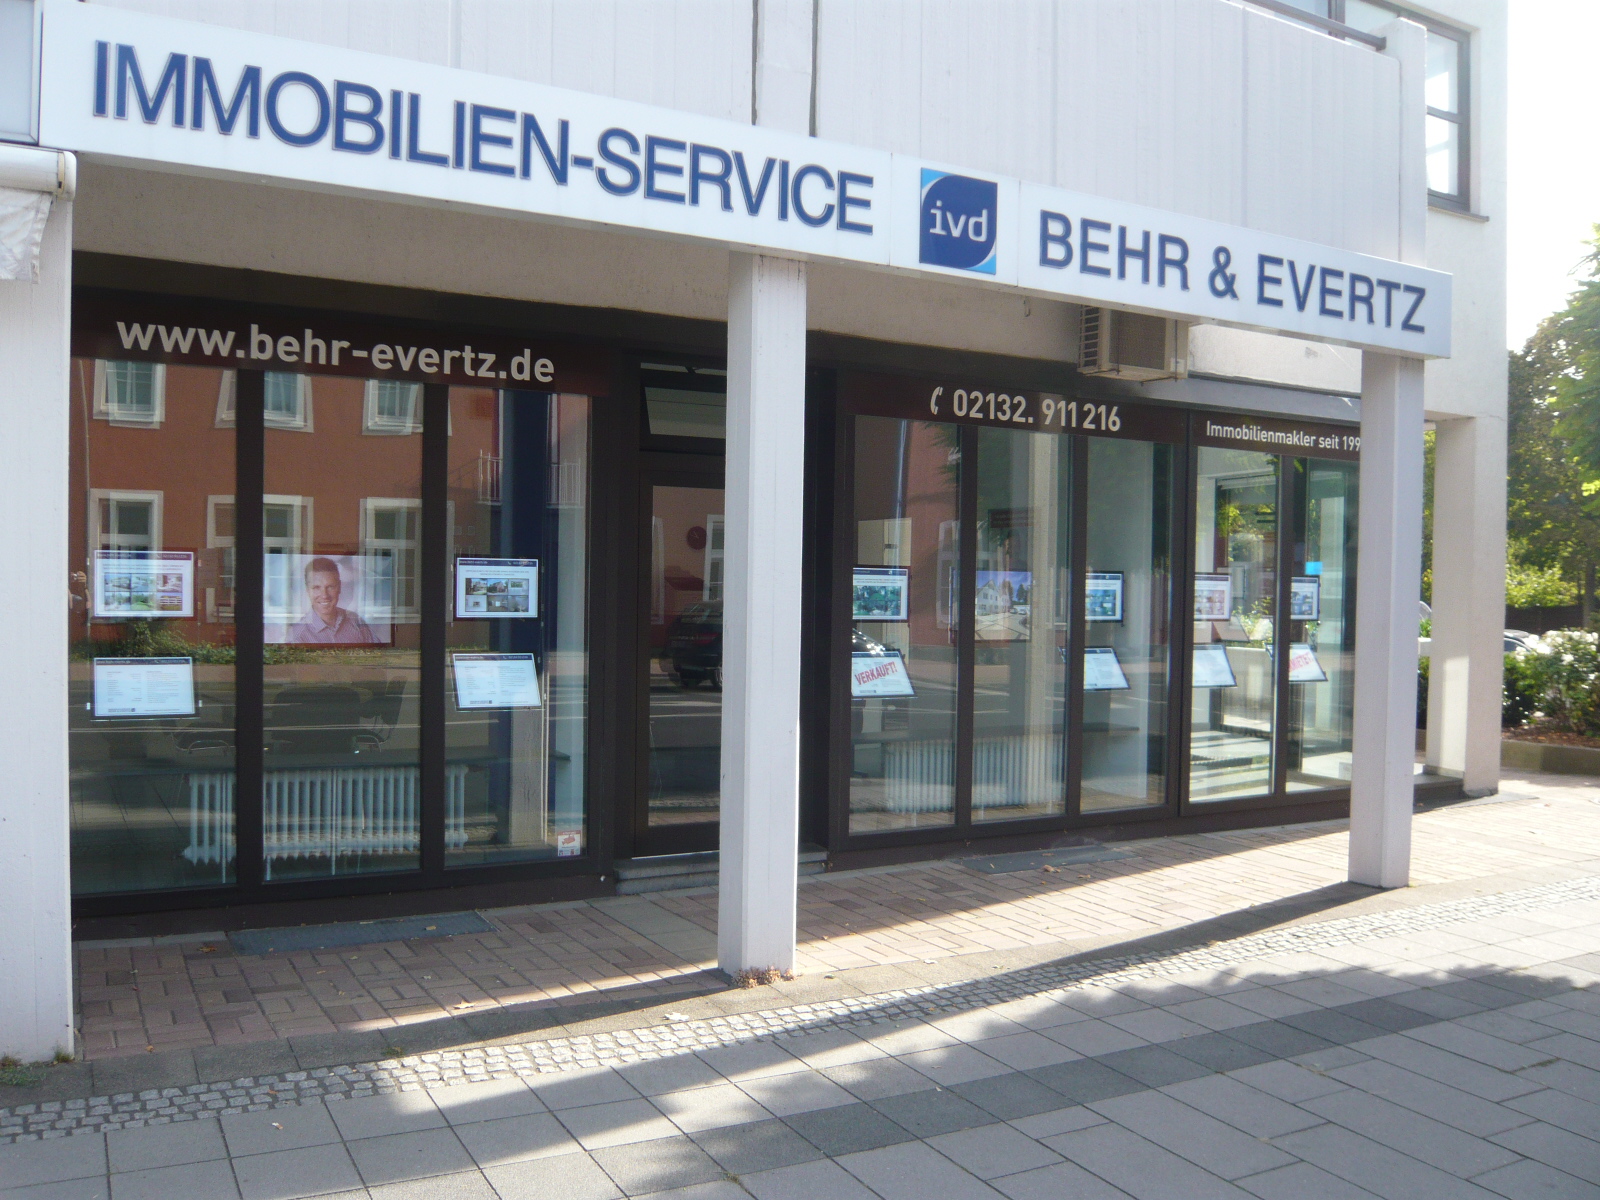 Immobilien-Service Behr & Evertz, Düsseldorfer Str. 52 in Meerbusch